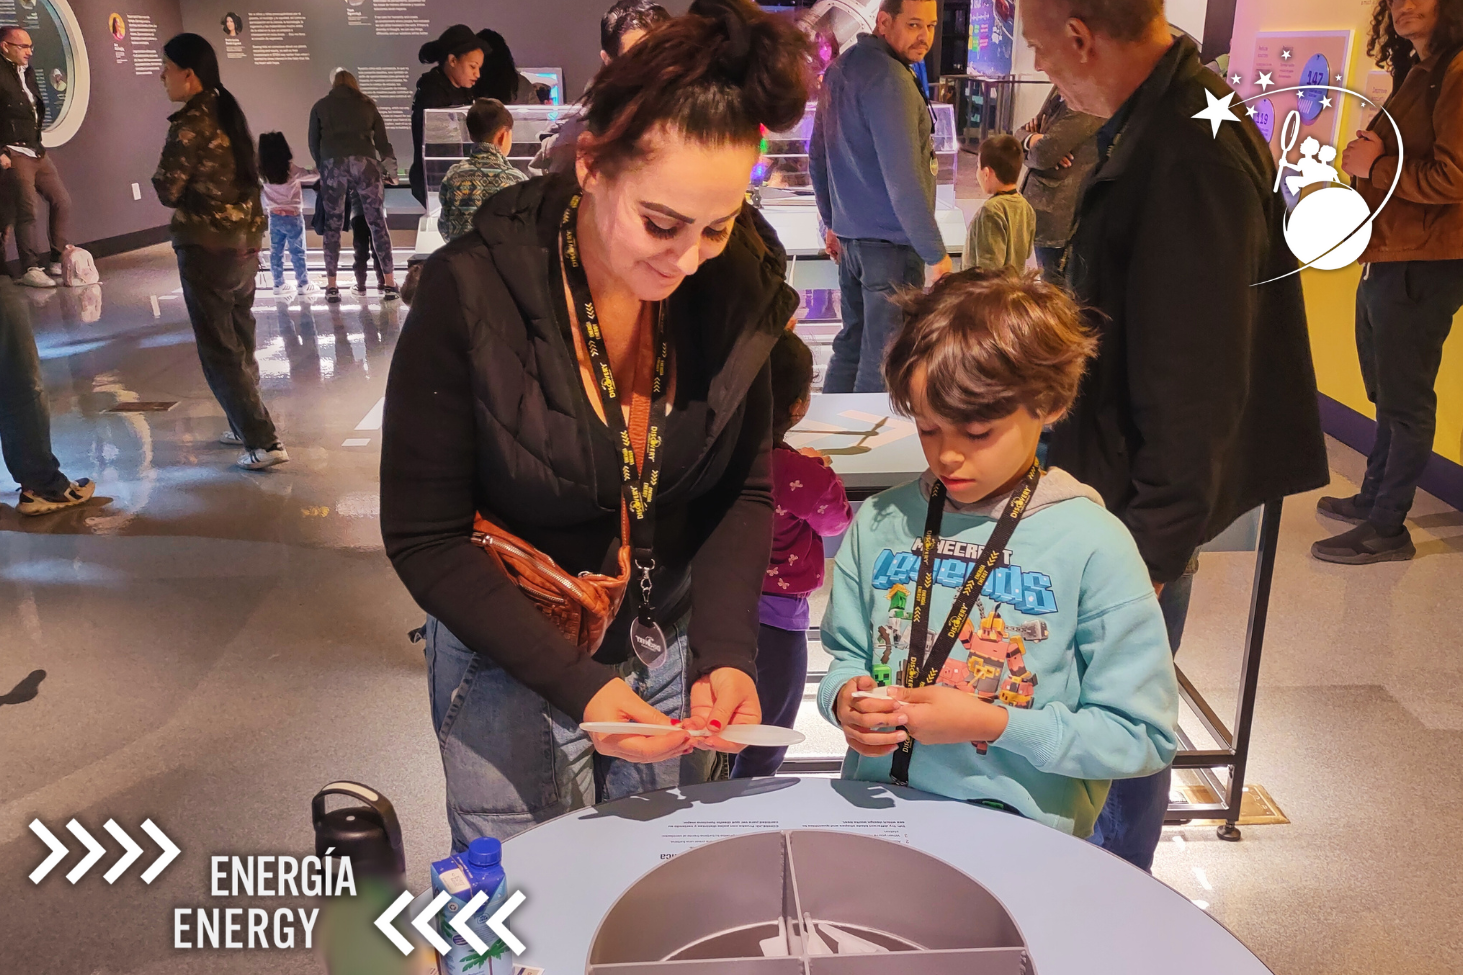 ディスカバリー子供博物館の展示で、プラスチック製の小さなプロペラを手にする親子。